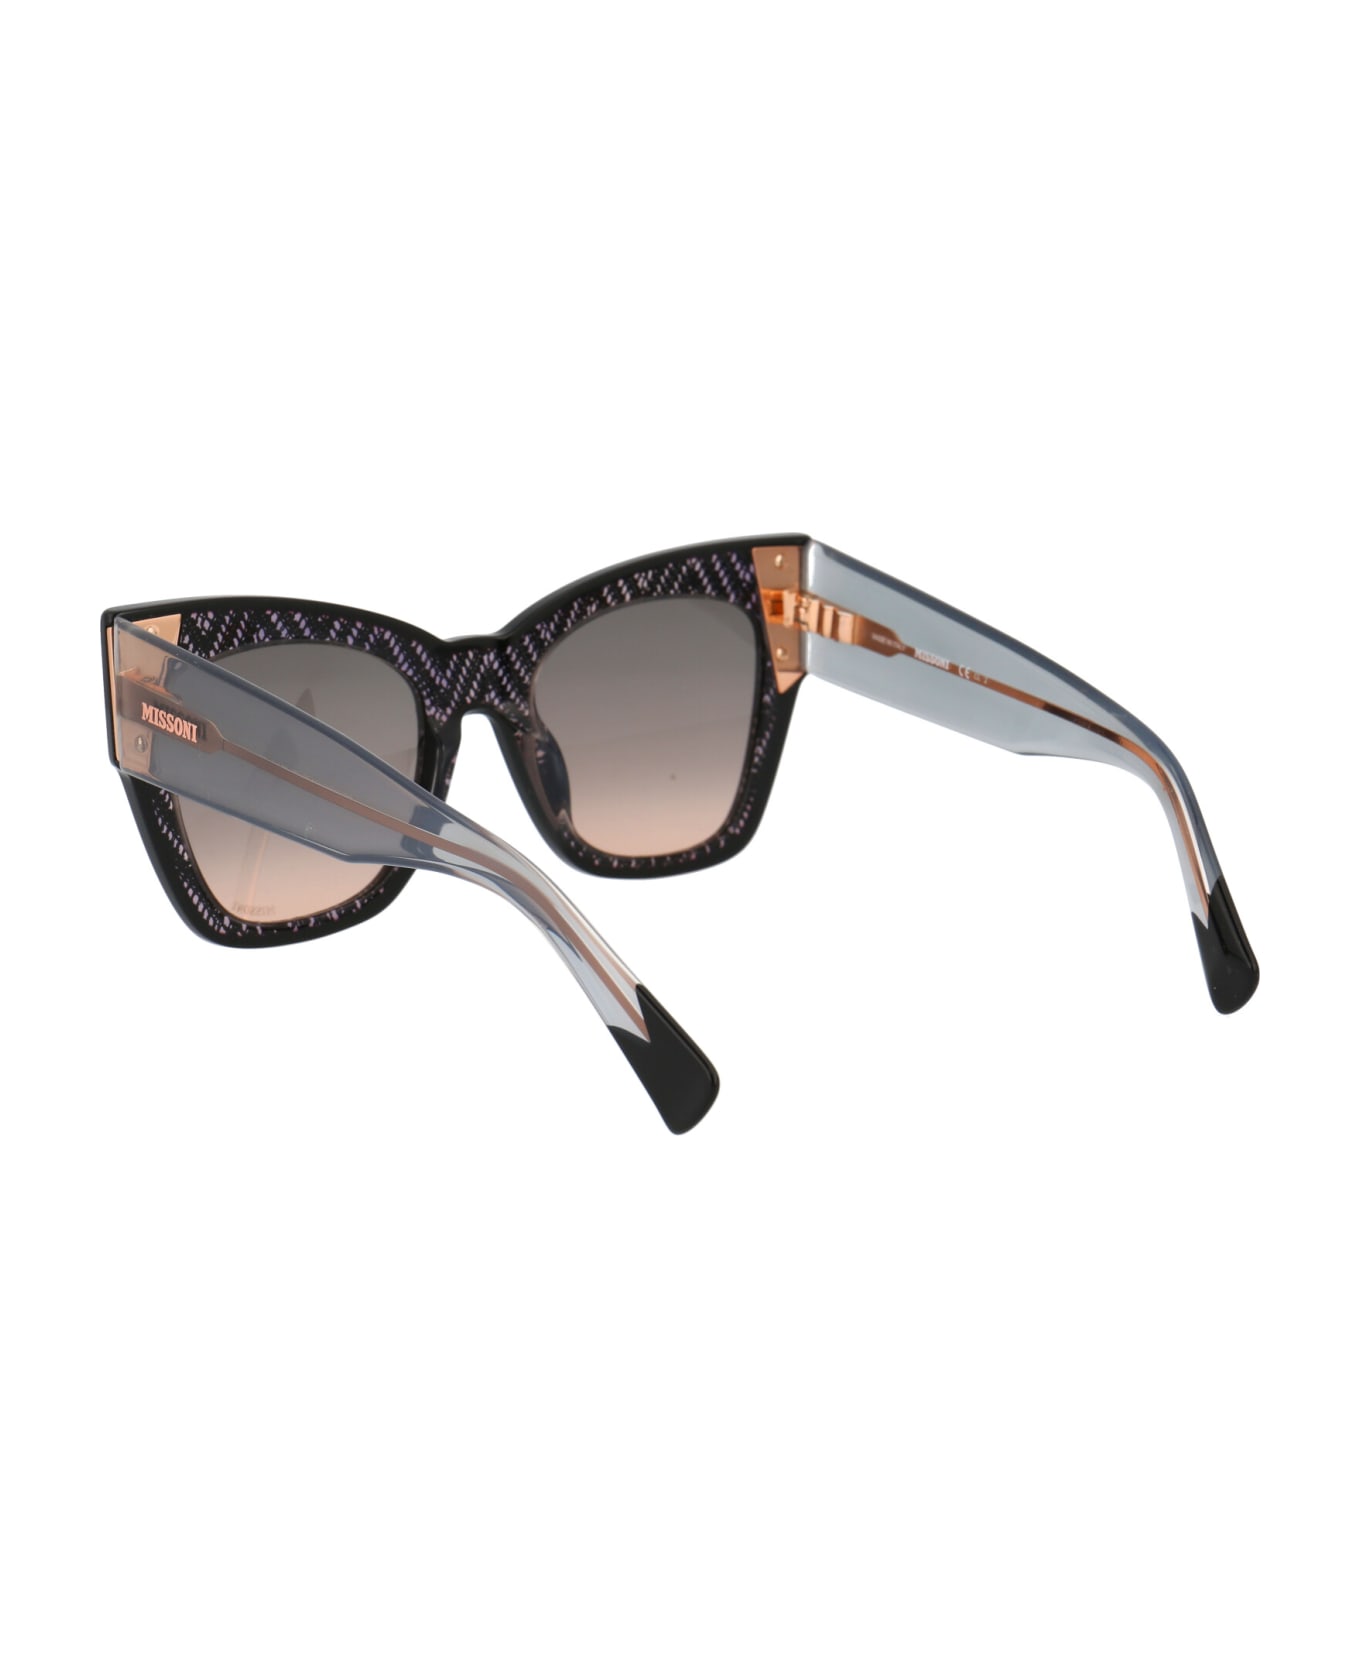 Missoni Mis 0040/s Sunglasses - KDXFF BLACK NUDE